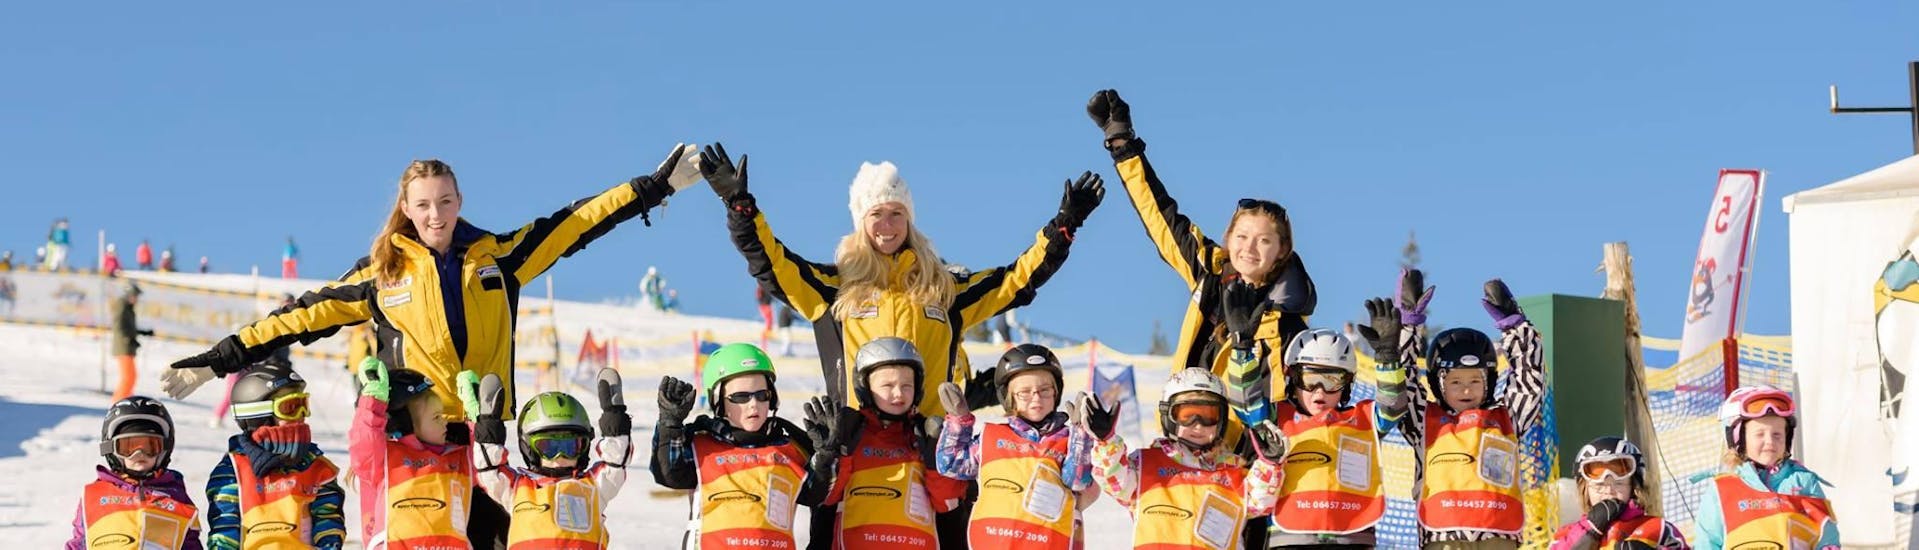 Skilessen "All-in-One" (6-14 jaar) - Eerste keer.